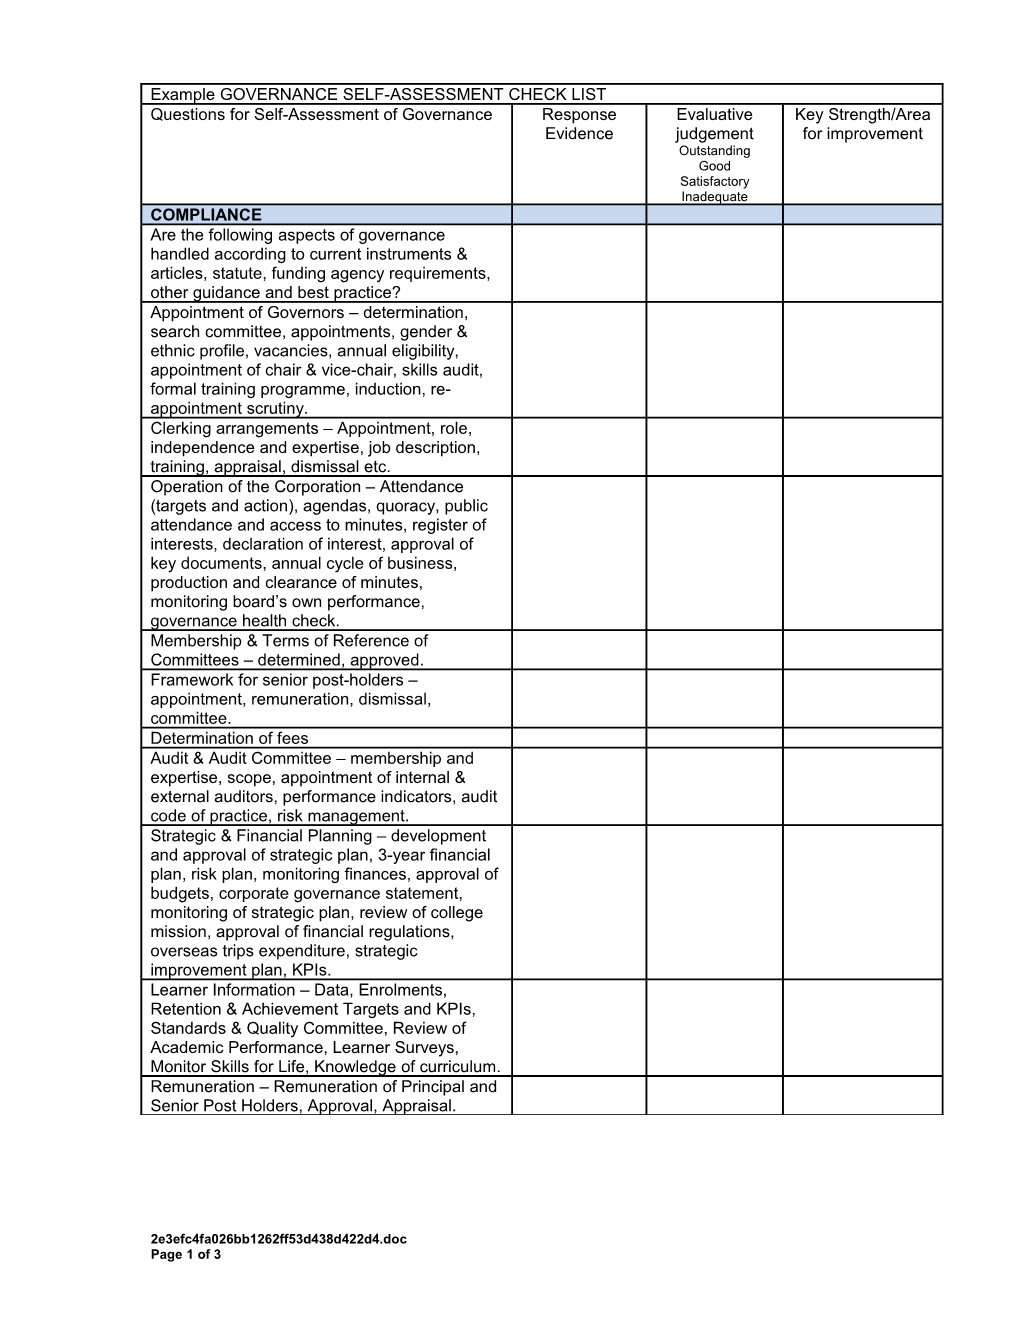 Sample Governance Self-Assessment Check List